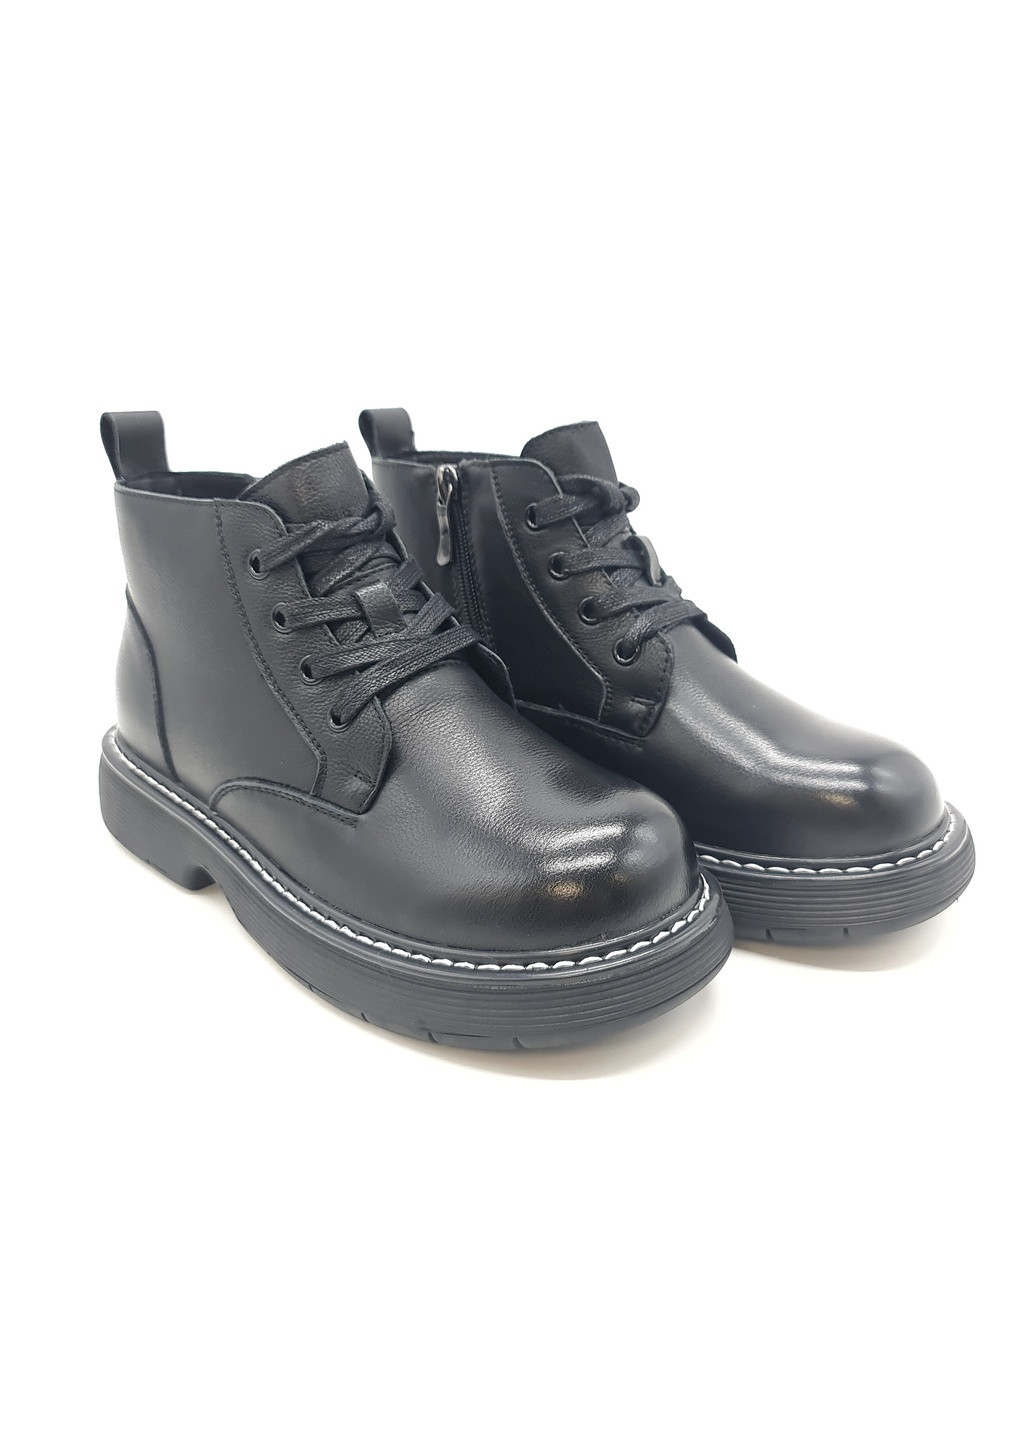 Осенние женские ботинки черные кожаные bv-13-3 23 см (р) Boss Victori